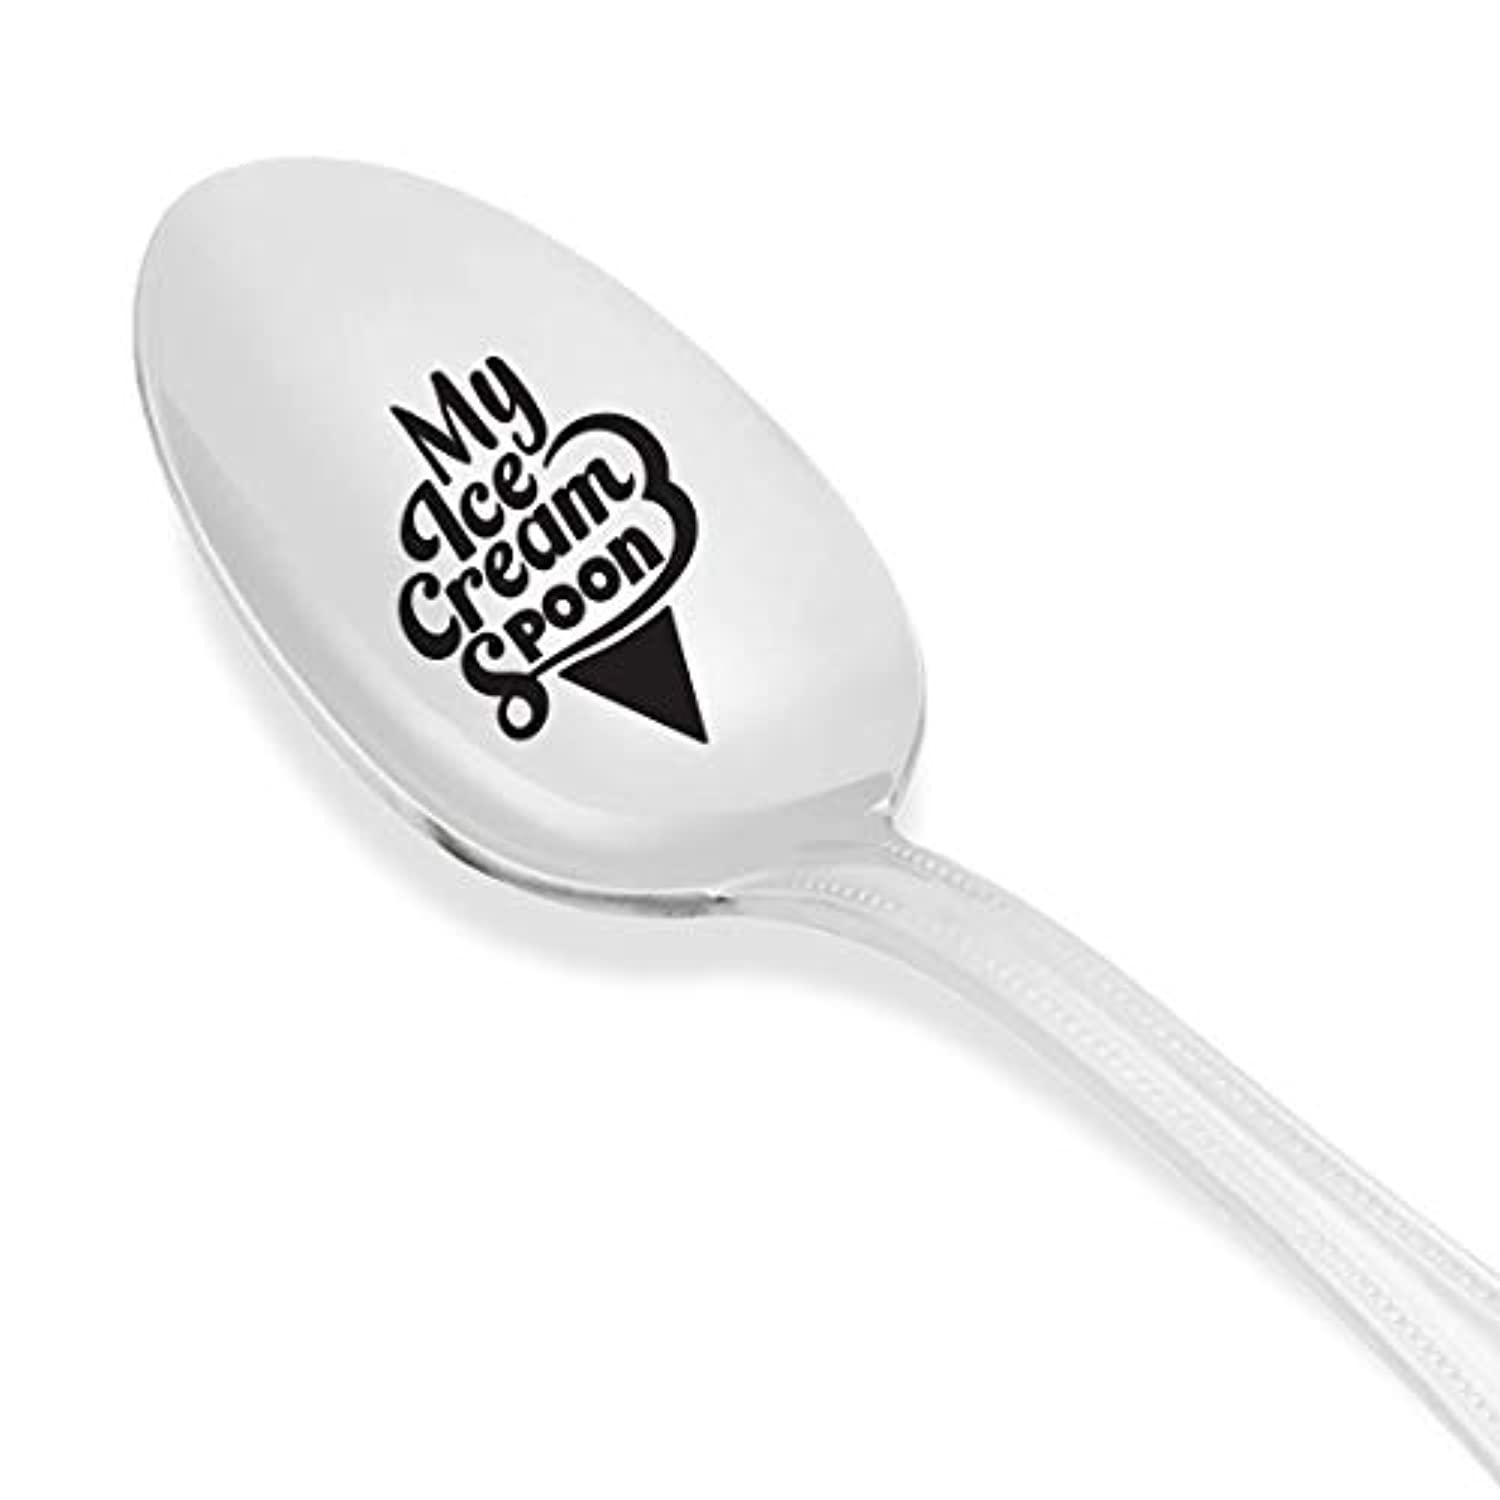 my ice cream spoon